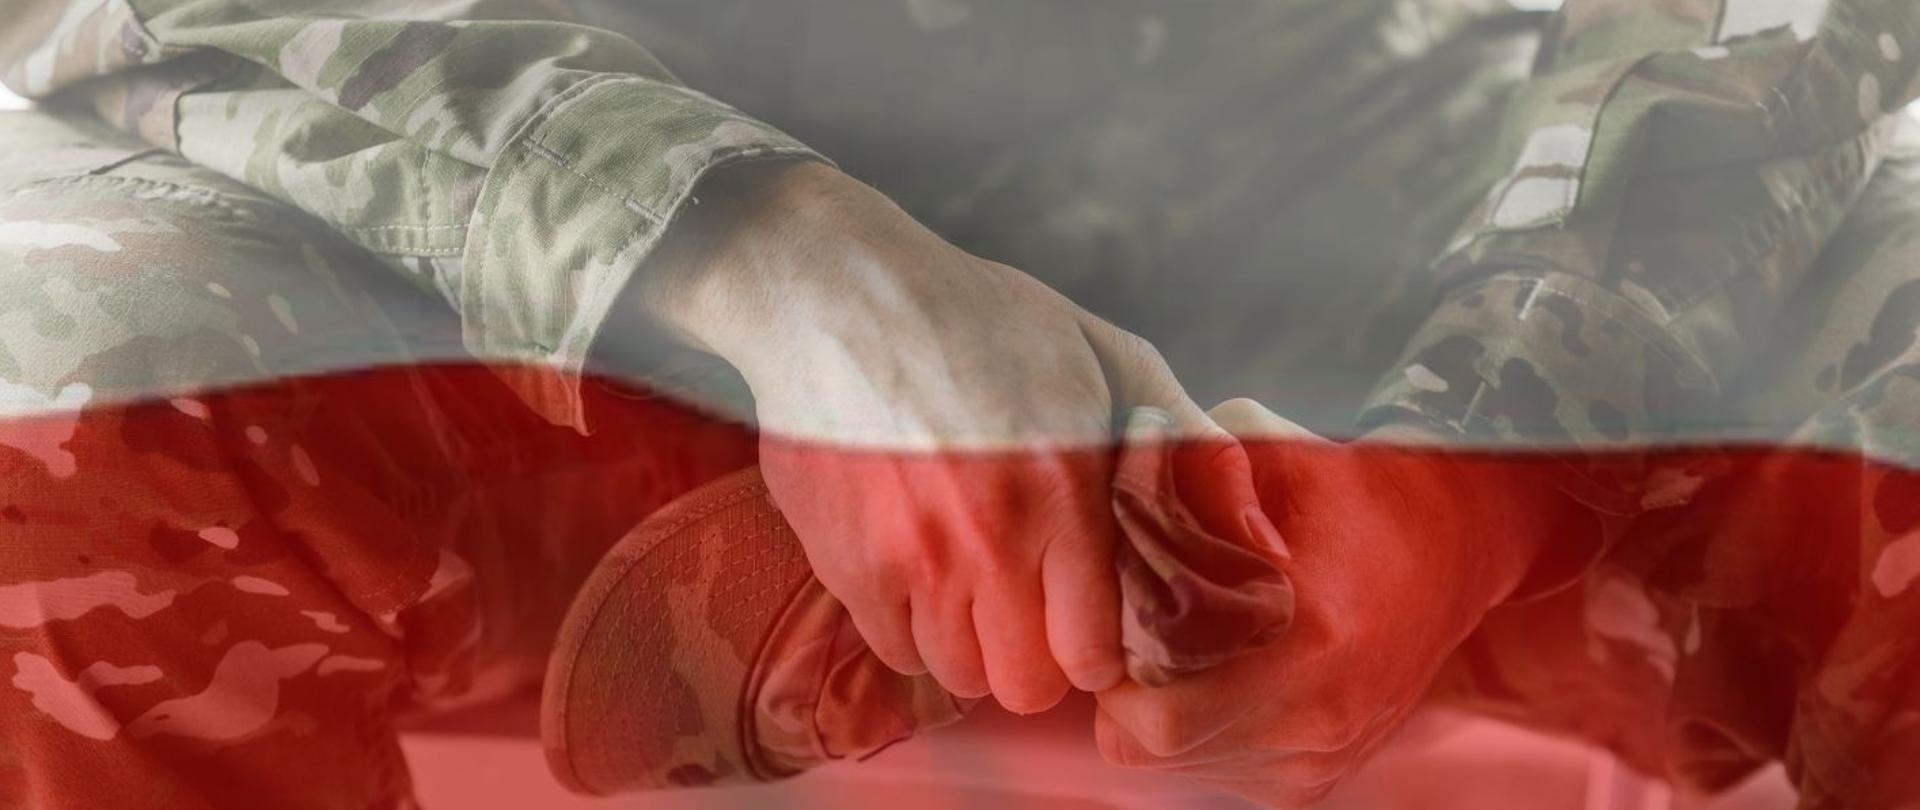 Święto Wojska Polskiego 